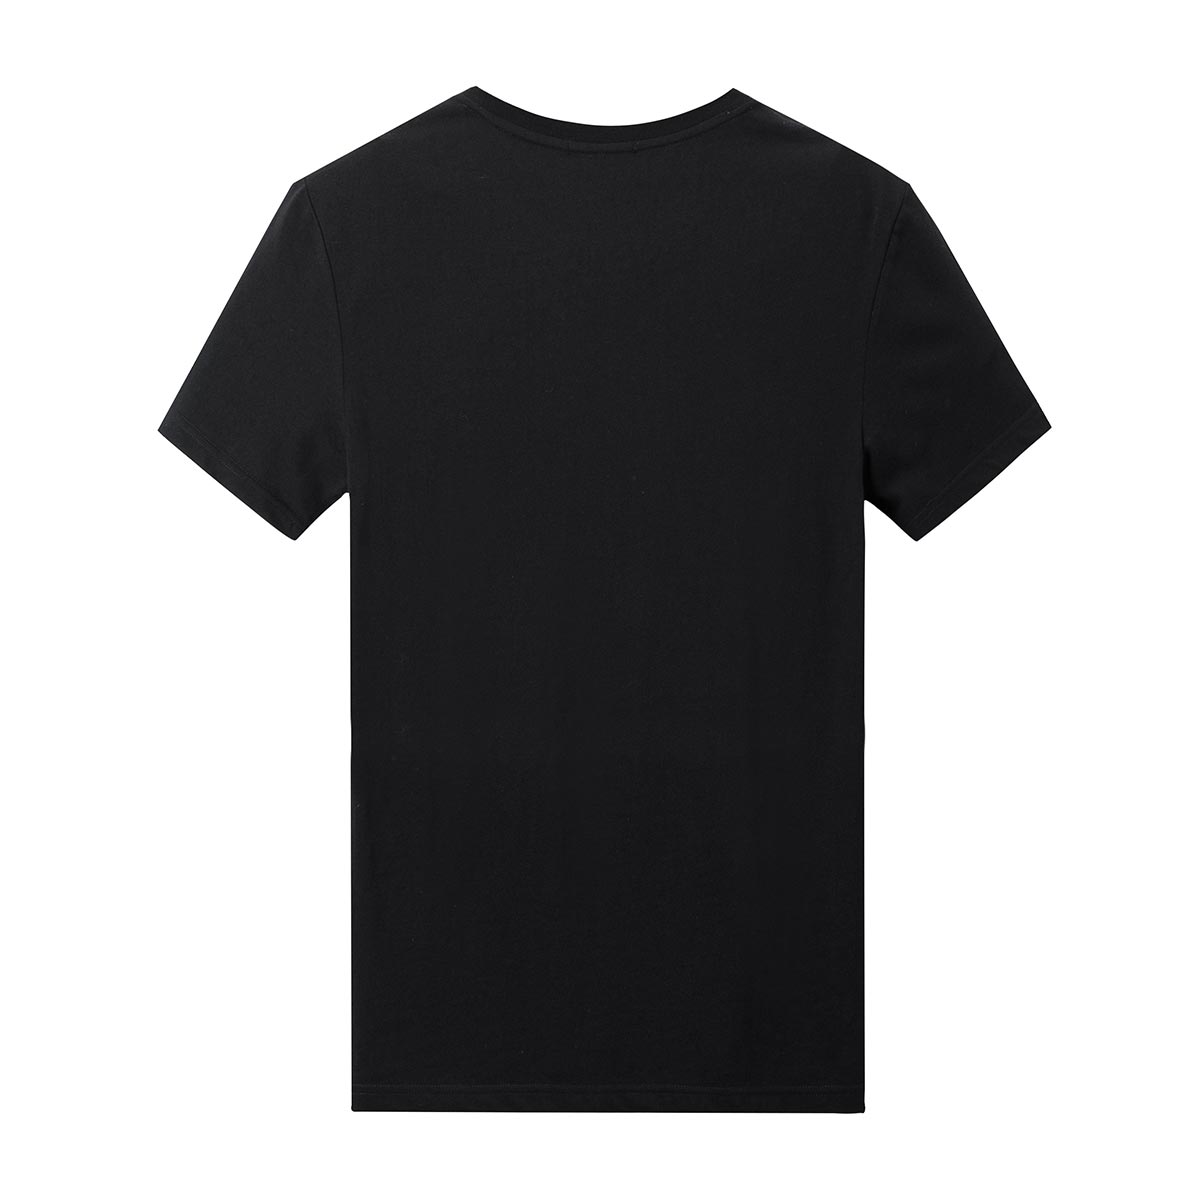 【商场同款】太平鸟男装 男士韩版黑色短袖t恤潮怪鸭款b1da73307